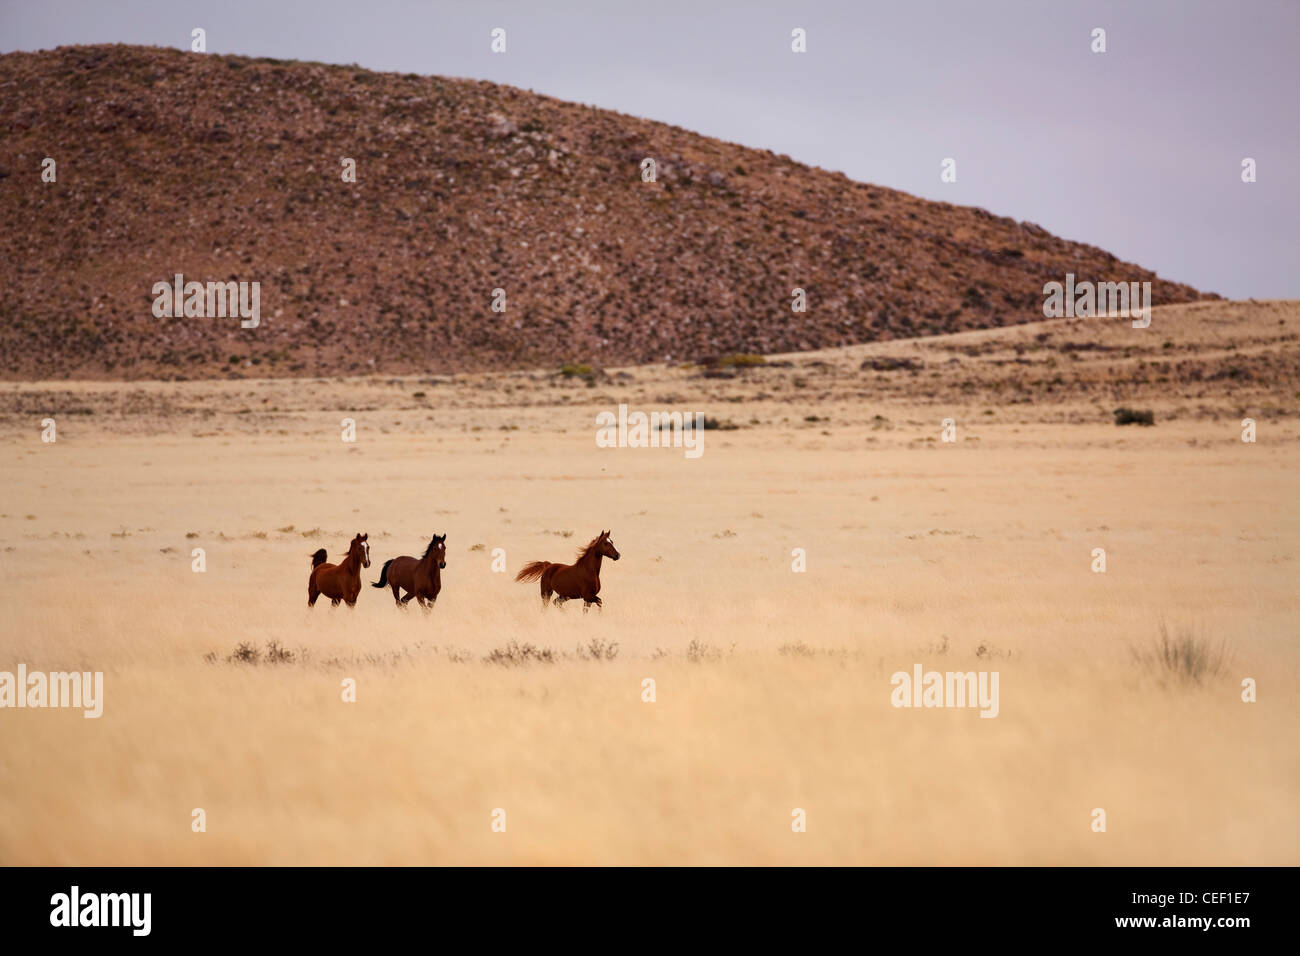 Les chevaux sauvages s'exécutant en désert africain Banque D'Images